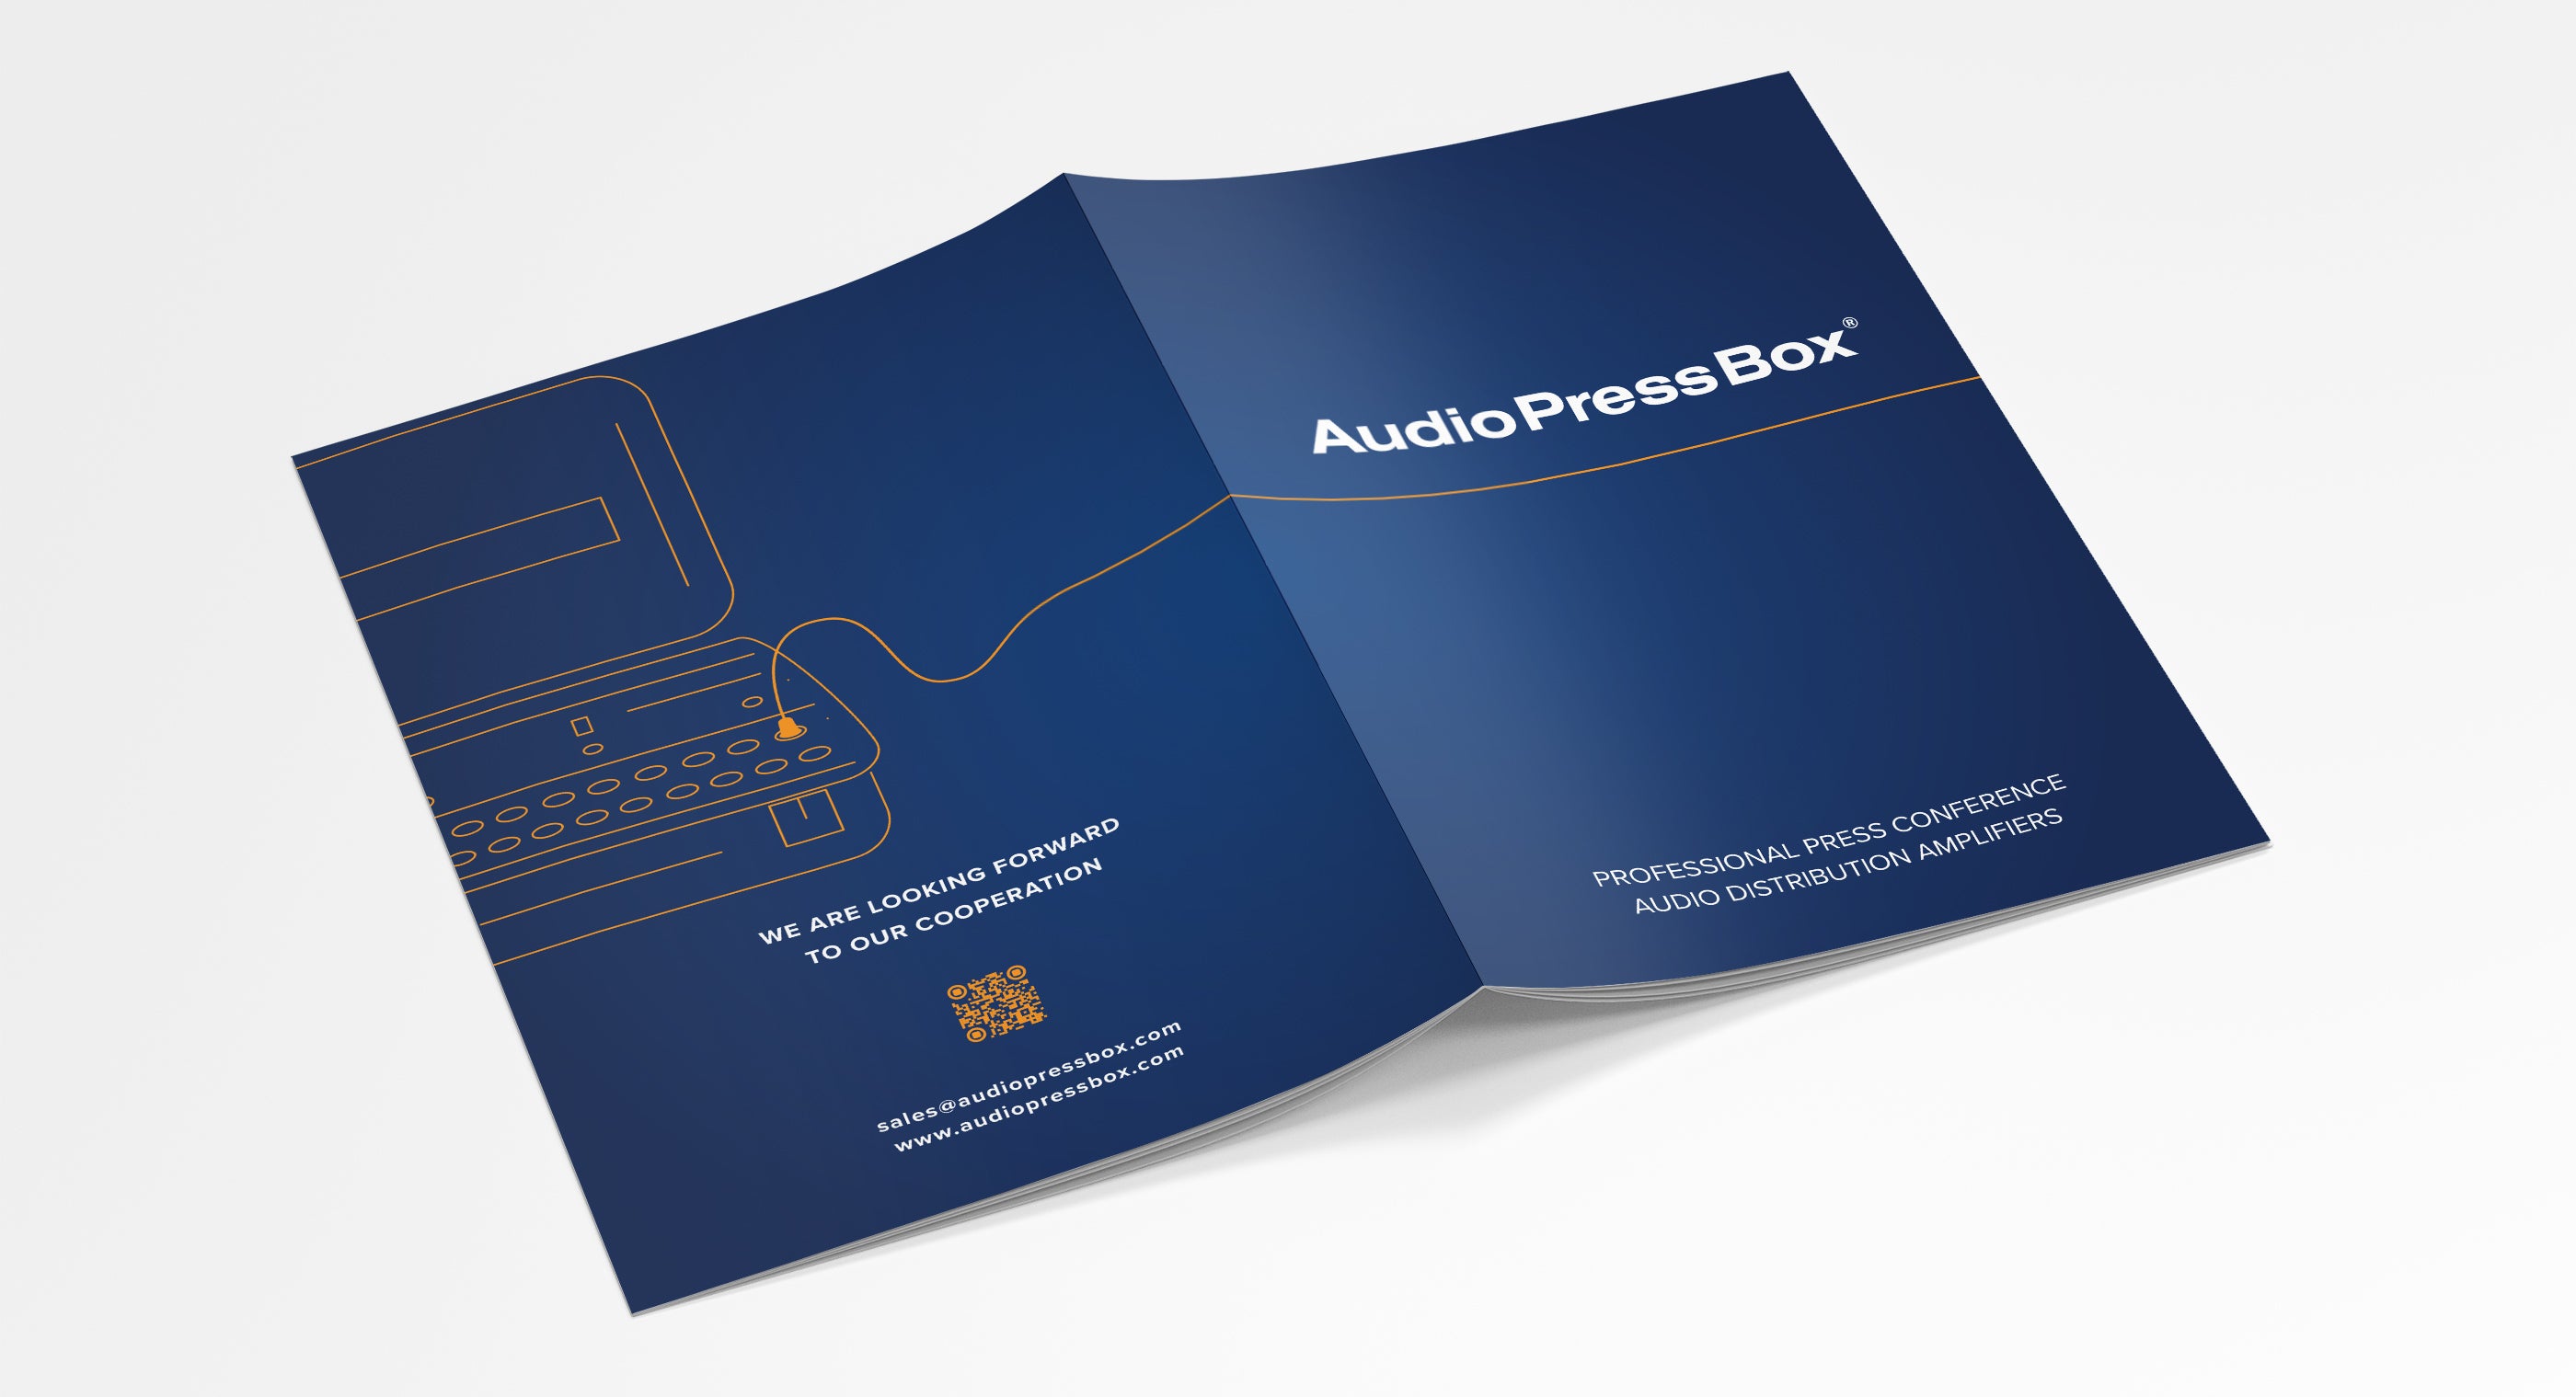 AudioPressBox company profile 2023